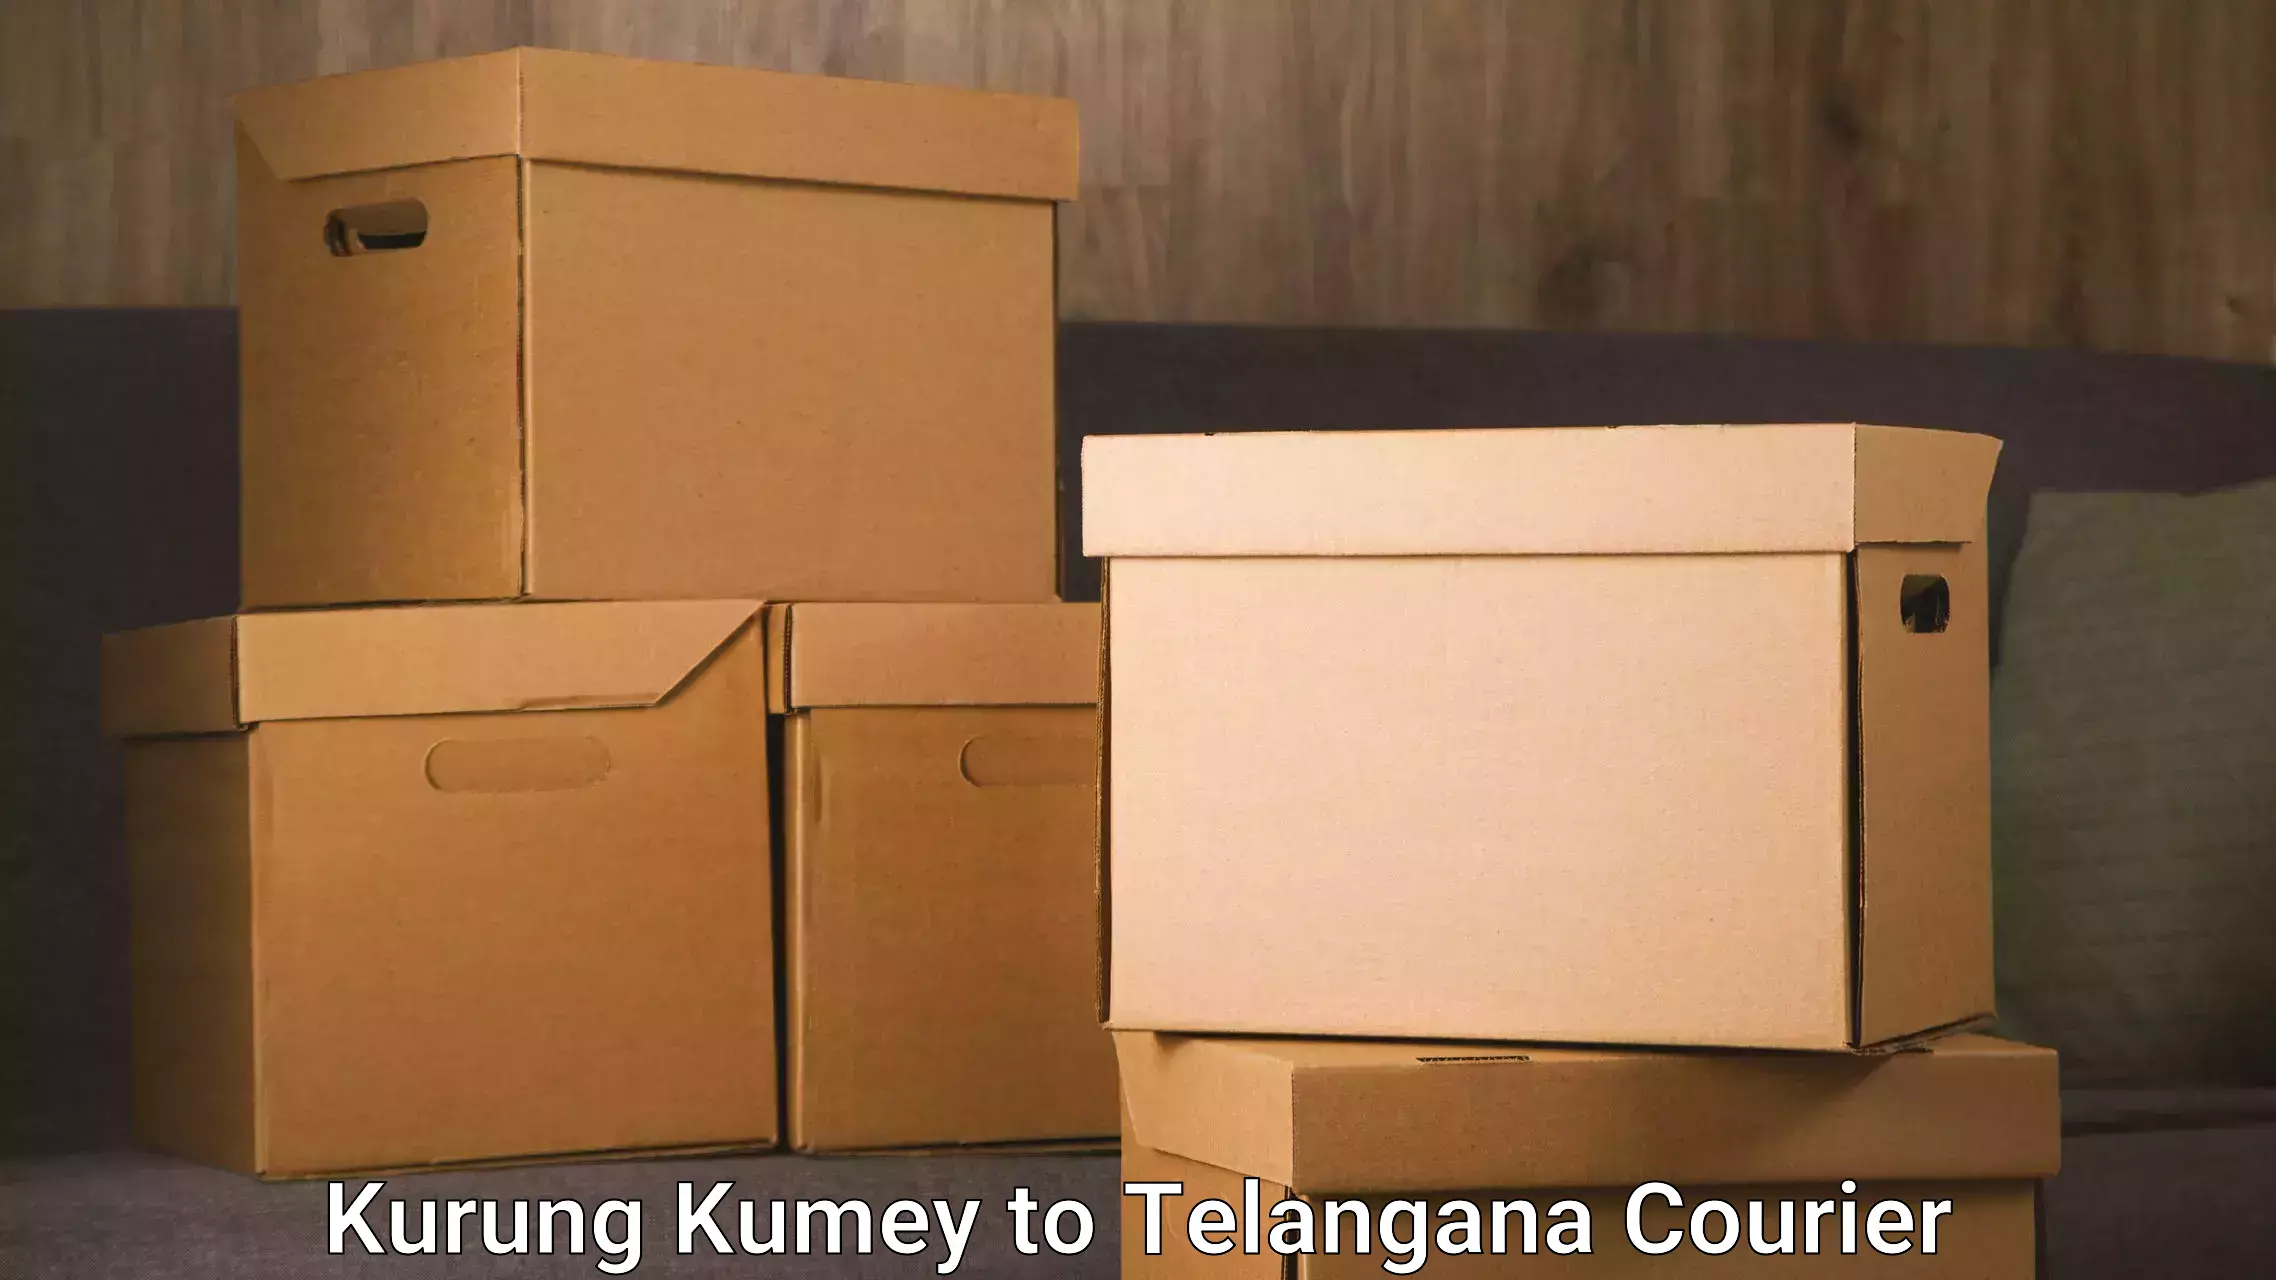 Modern courier technology Kurung Kumey to Kodimial